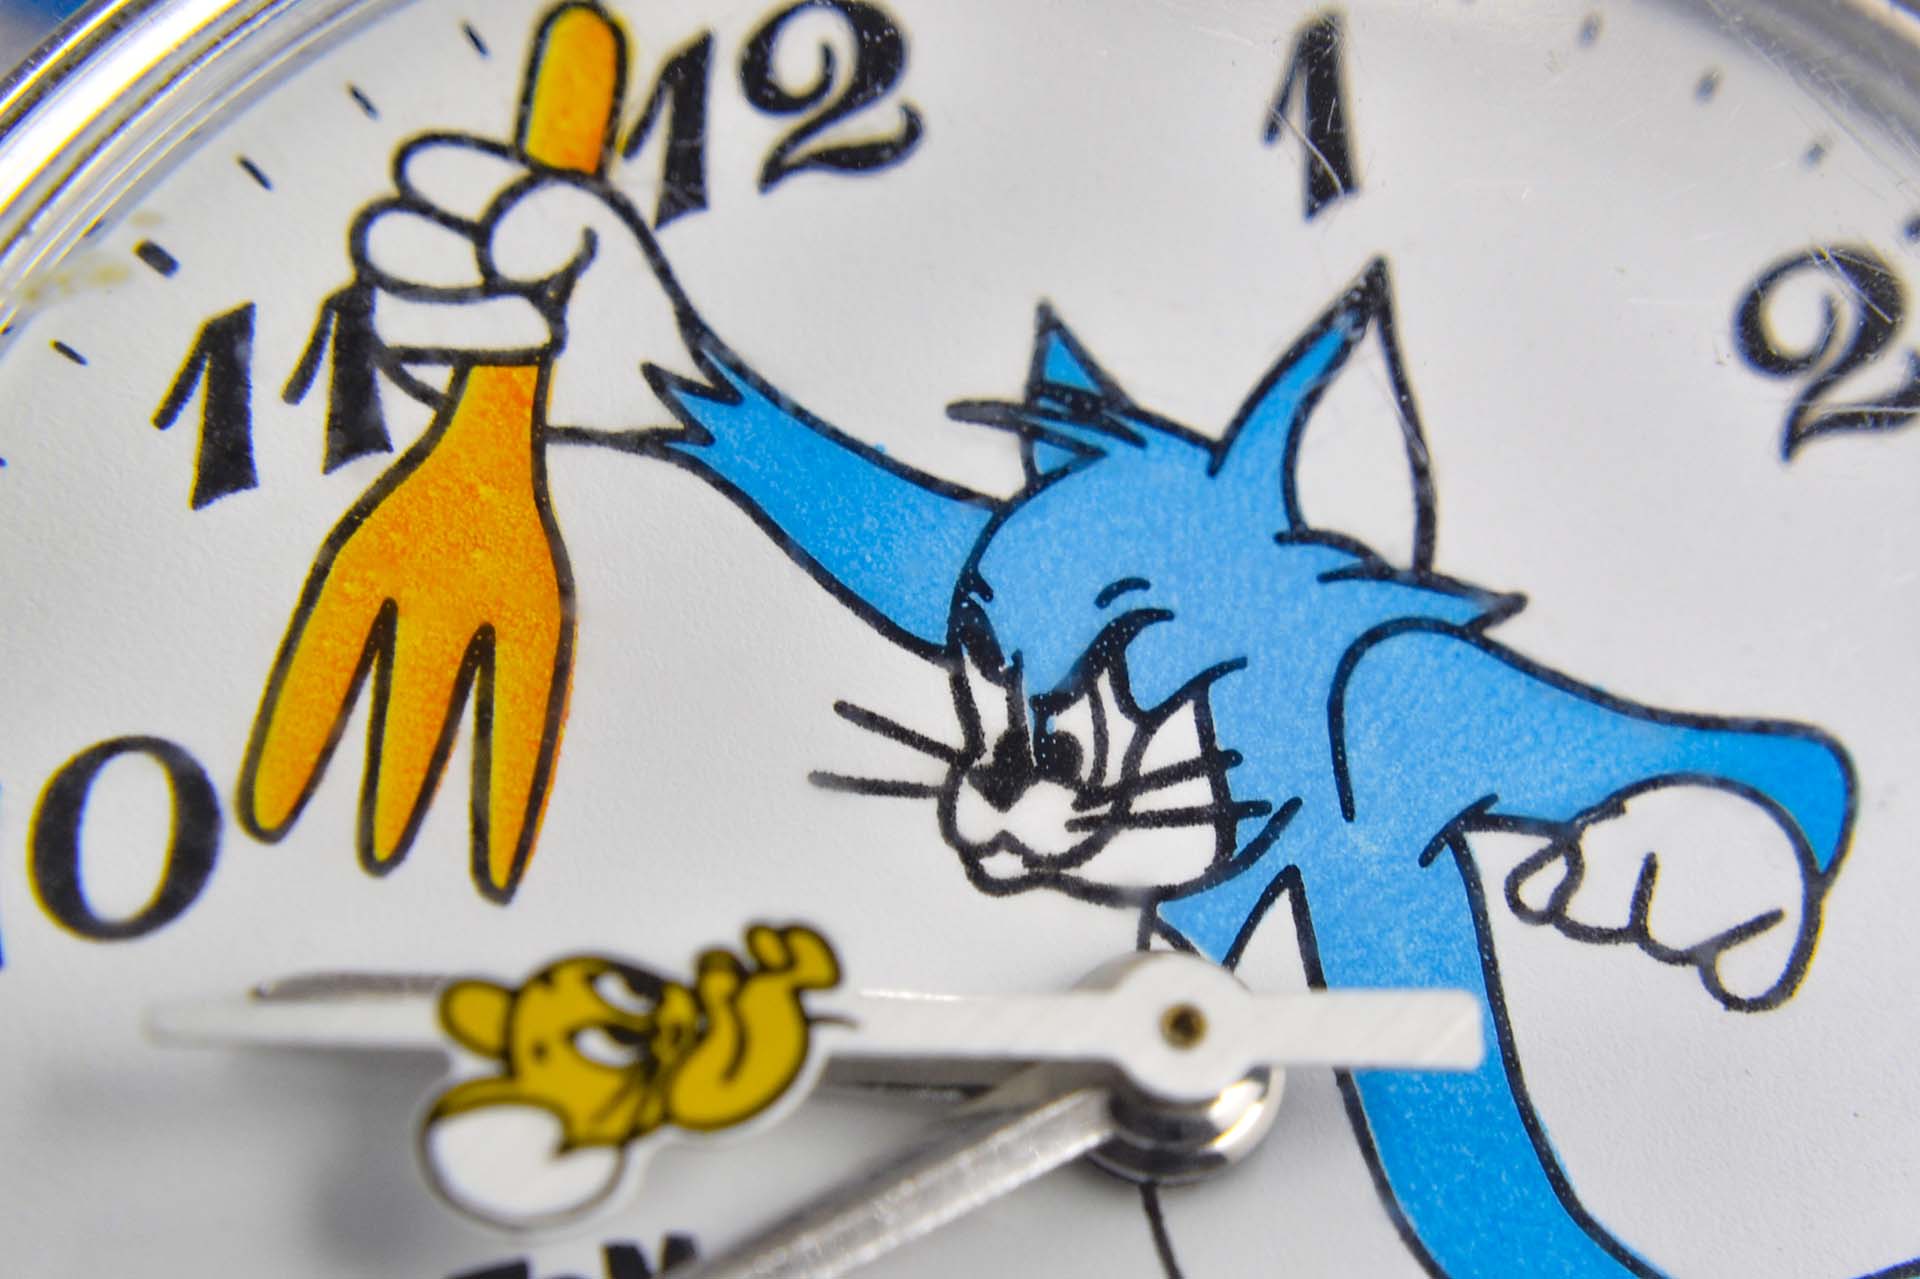 Seiko Mécanique Tom & Jerry "Fourchette" vers 1970 - LumeVille